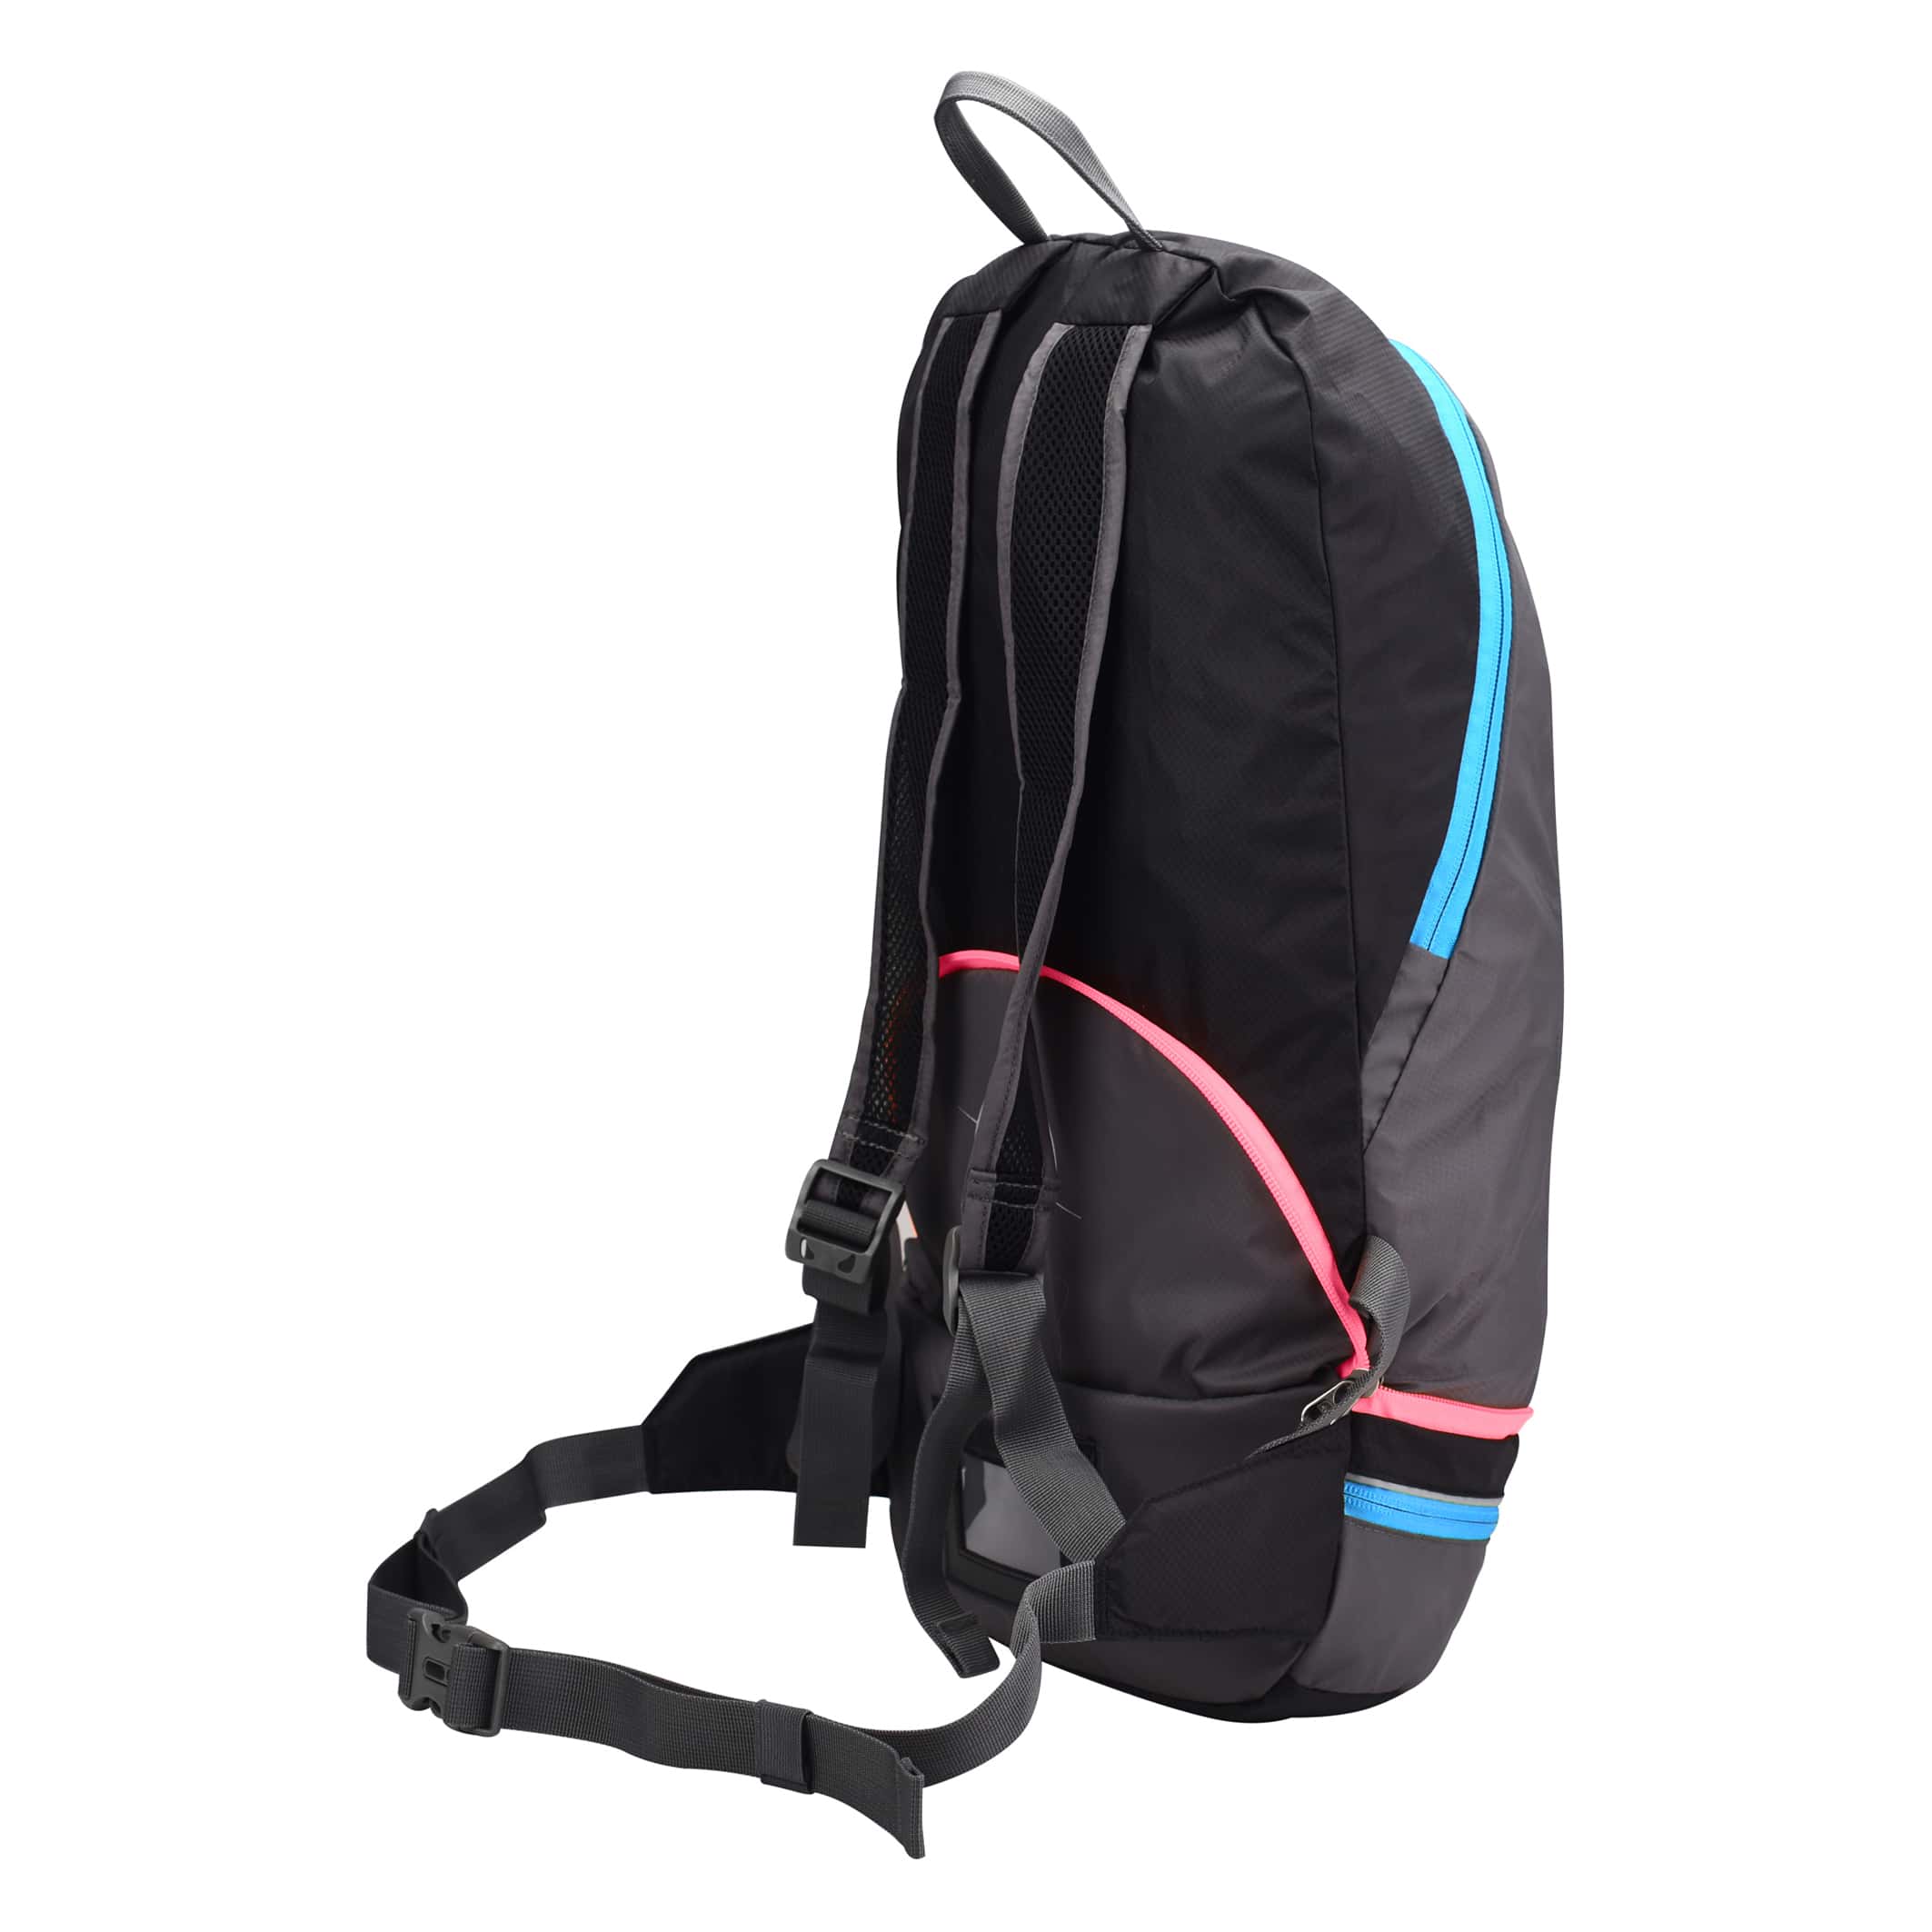 MB550-05-Backpack-2-in-1-Rock-Blue-Pink-Side